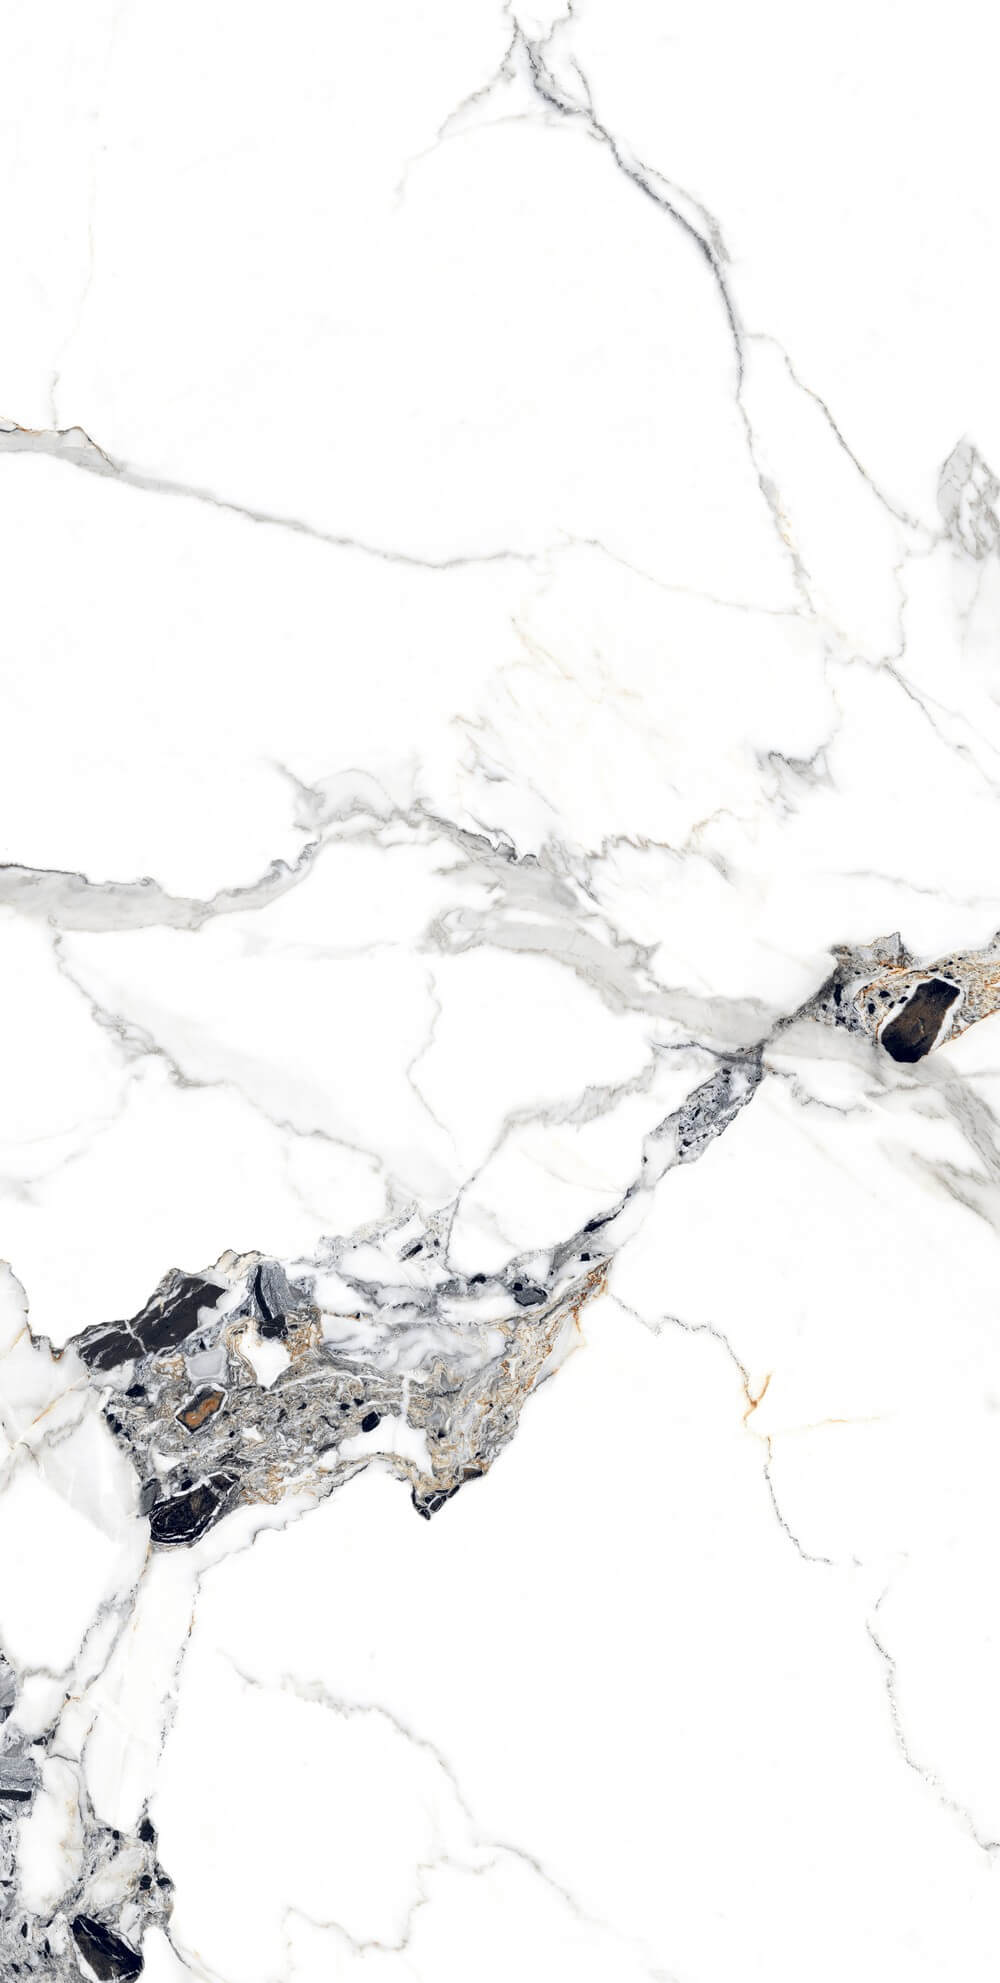 Medicea Marble Rectified wielkoformatowy matowy efekt kamienia porcelanowego 800x1600mm Płytki podłogowe i ścienne 